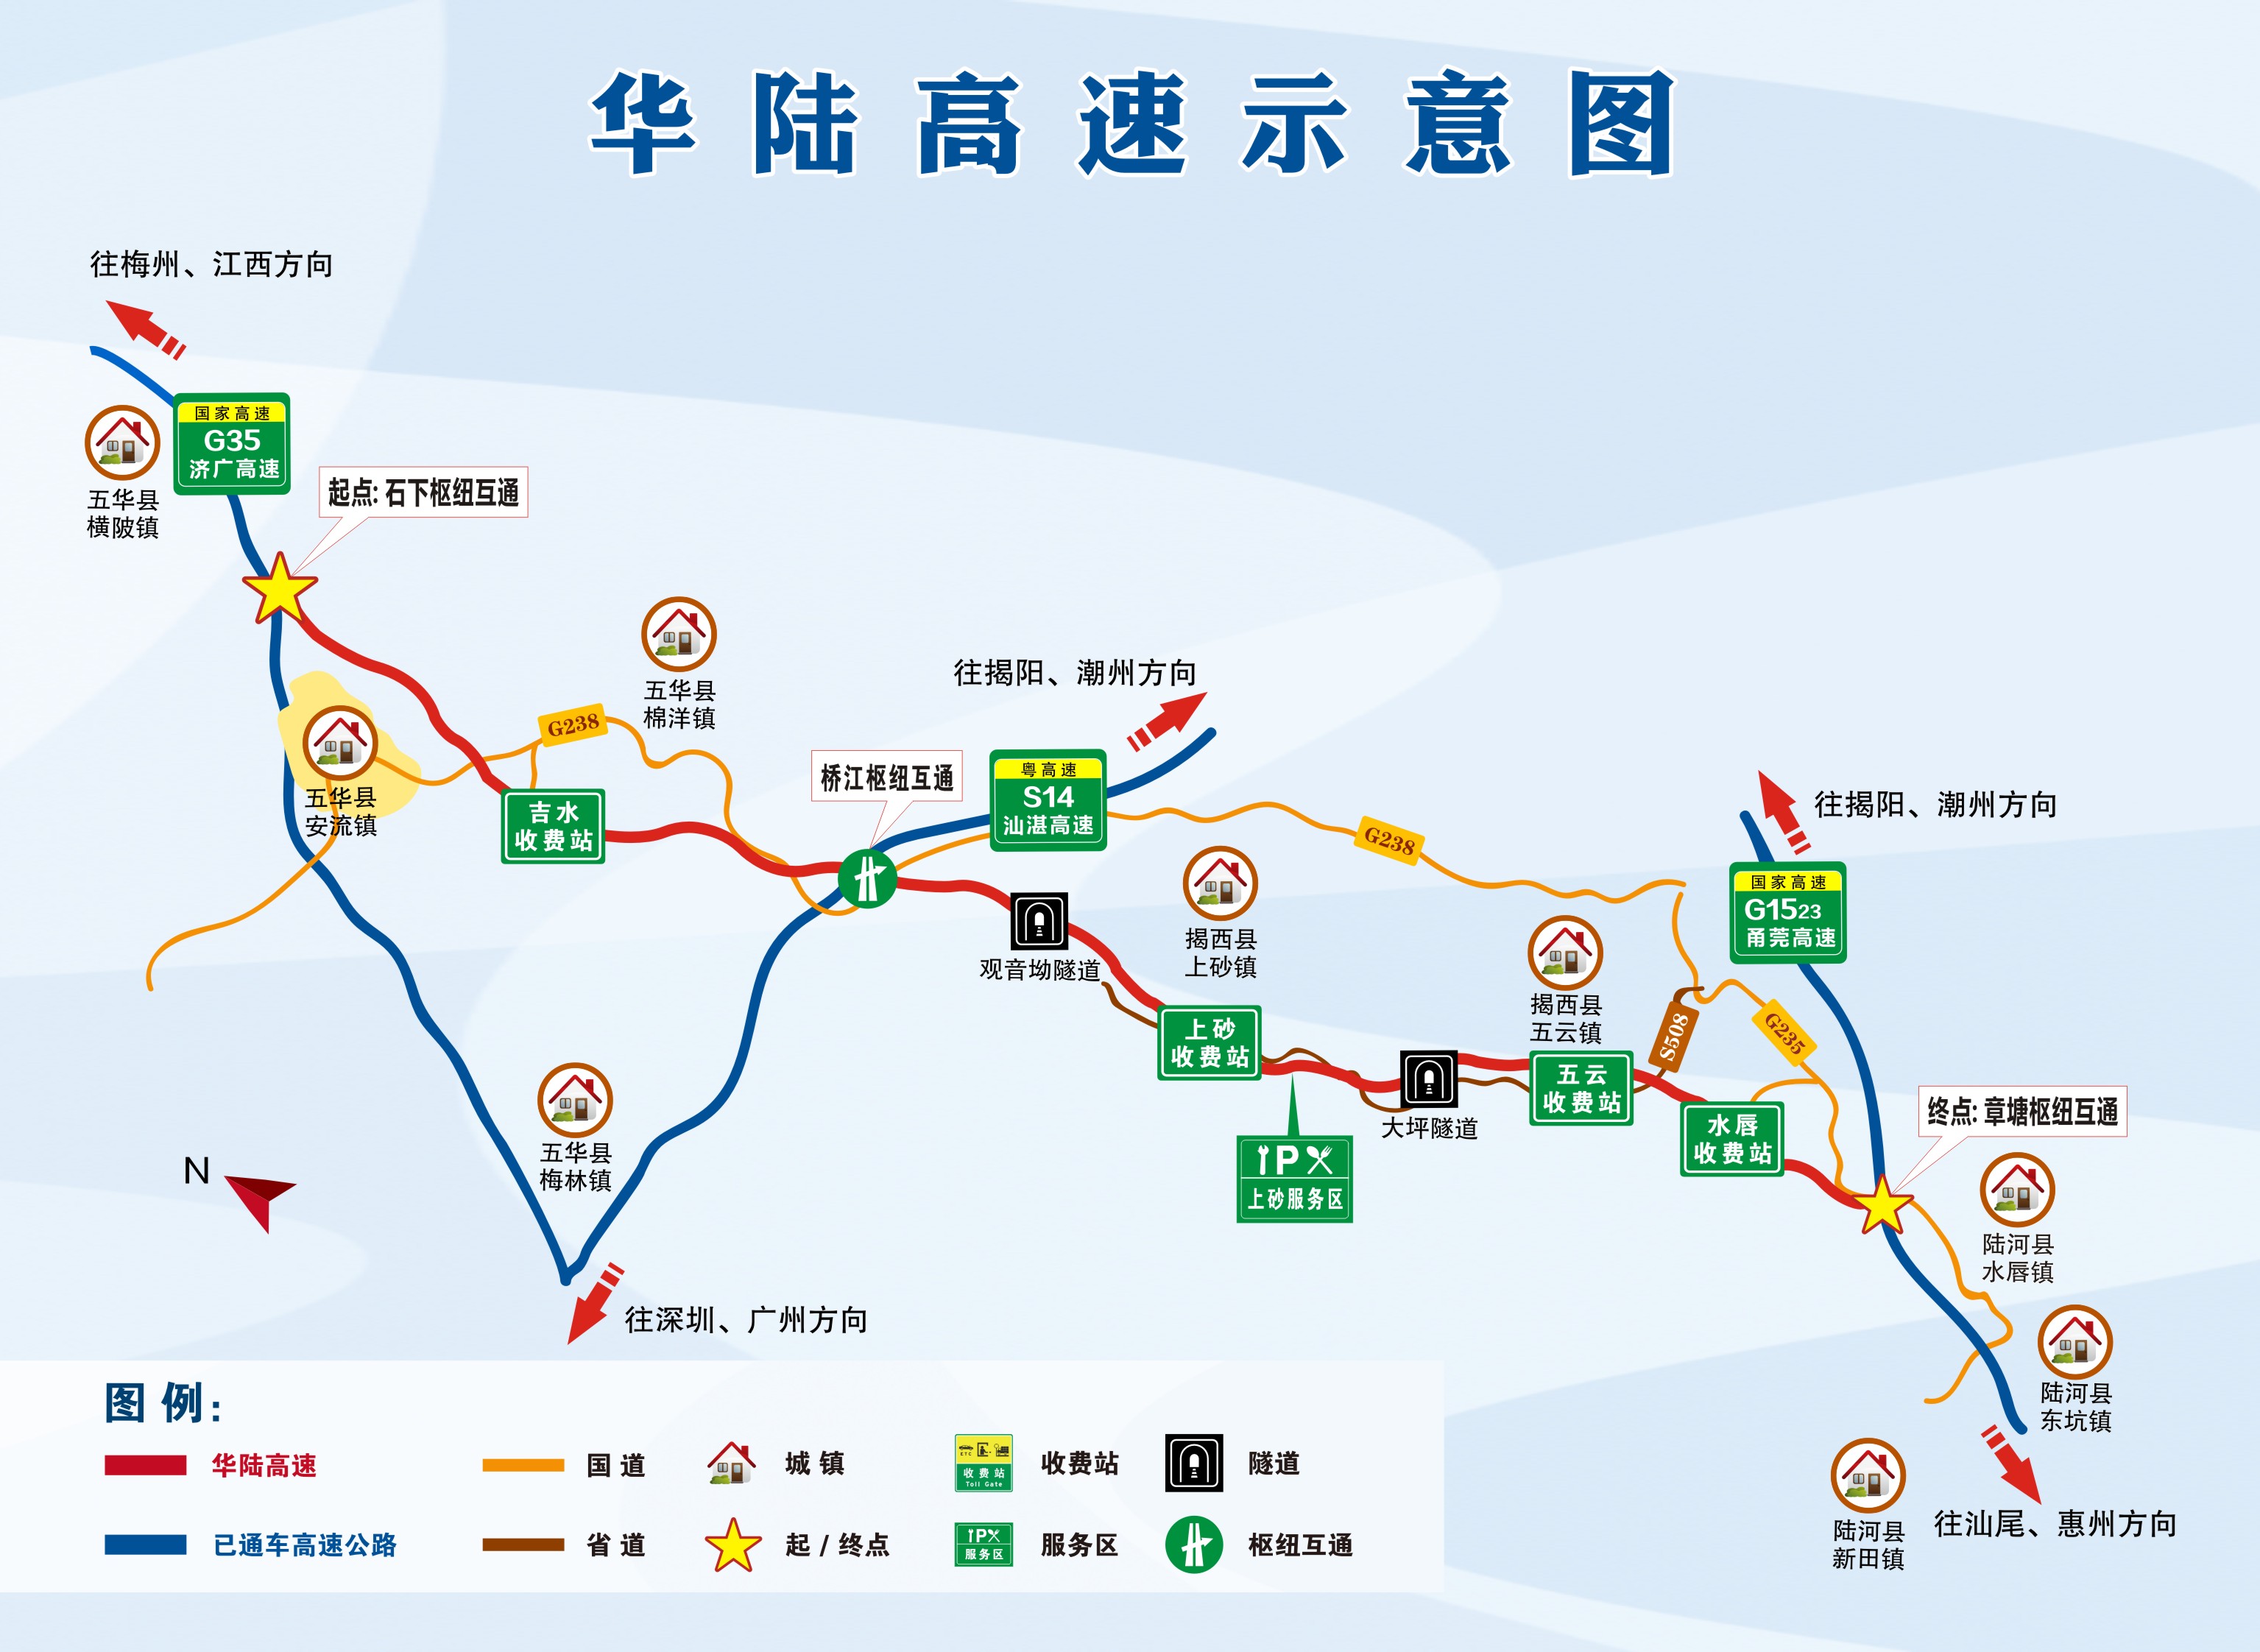 11月28日9点半,随着兴宁至汕尾高速公路五华至陆河段(简称"华陆高速)